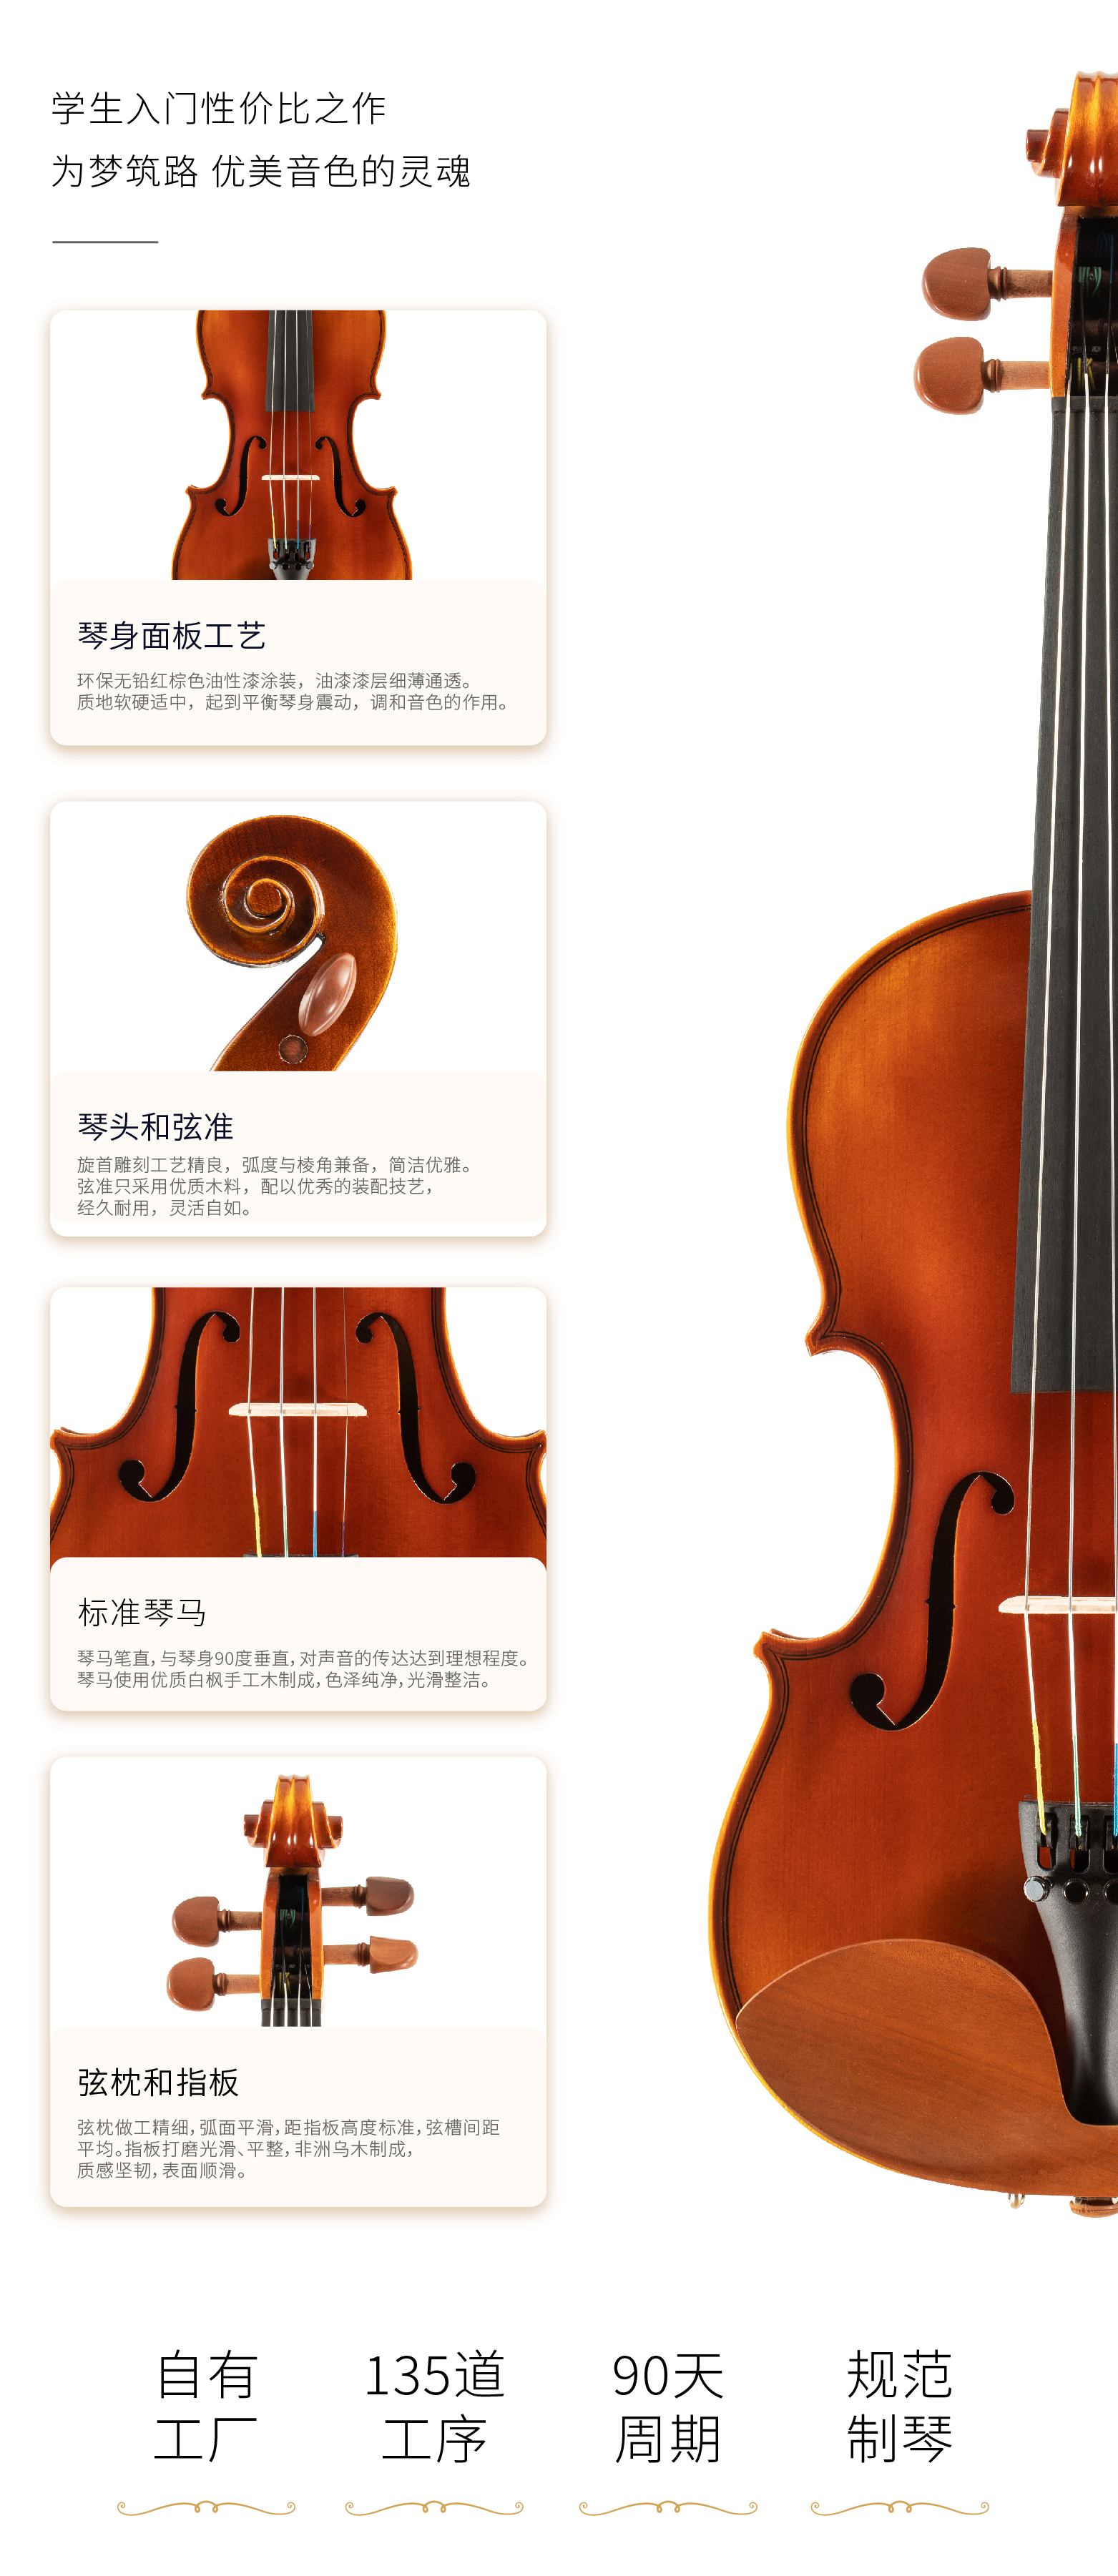 熙珑乐器专营店-详情-v1-2_SV210小提琴__07.jpg